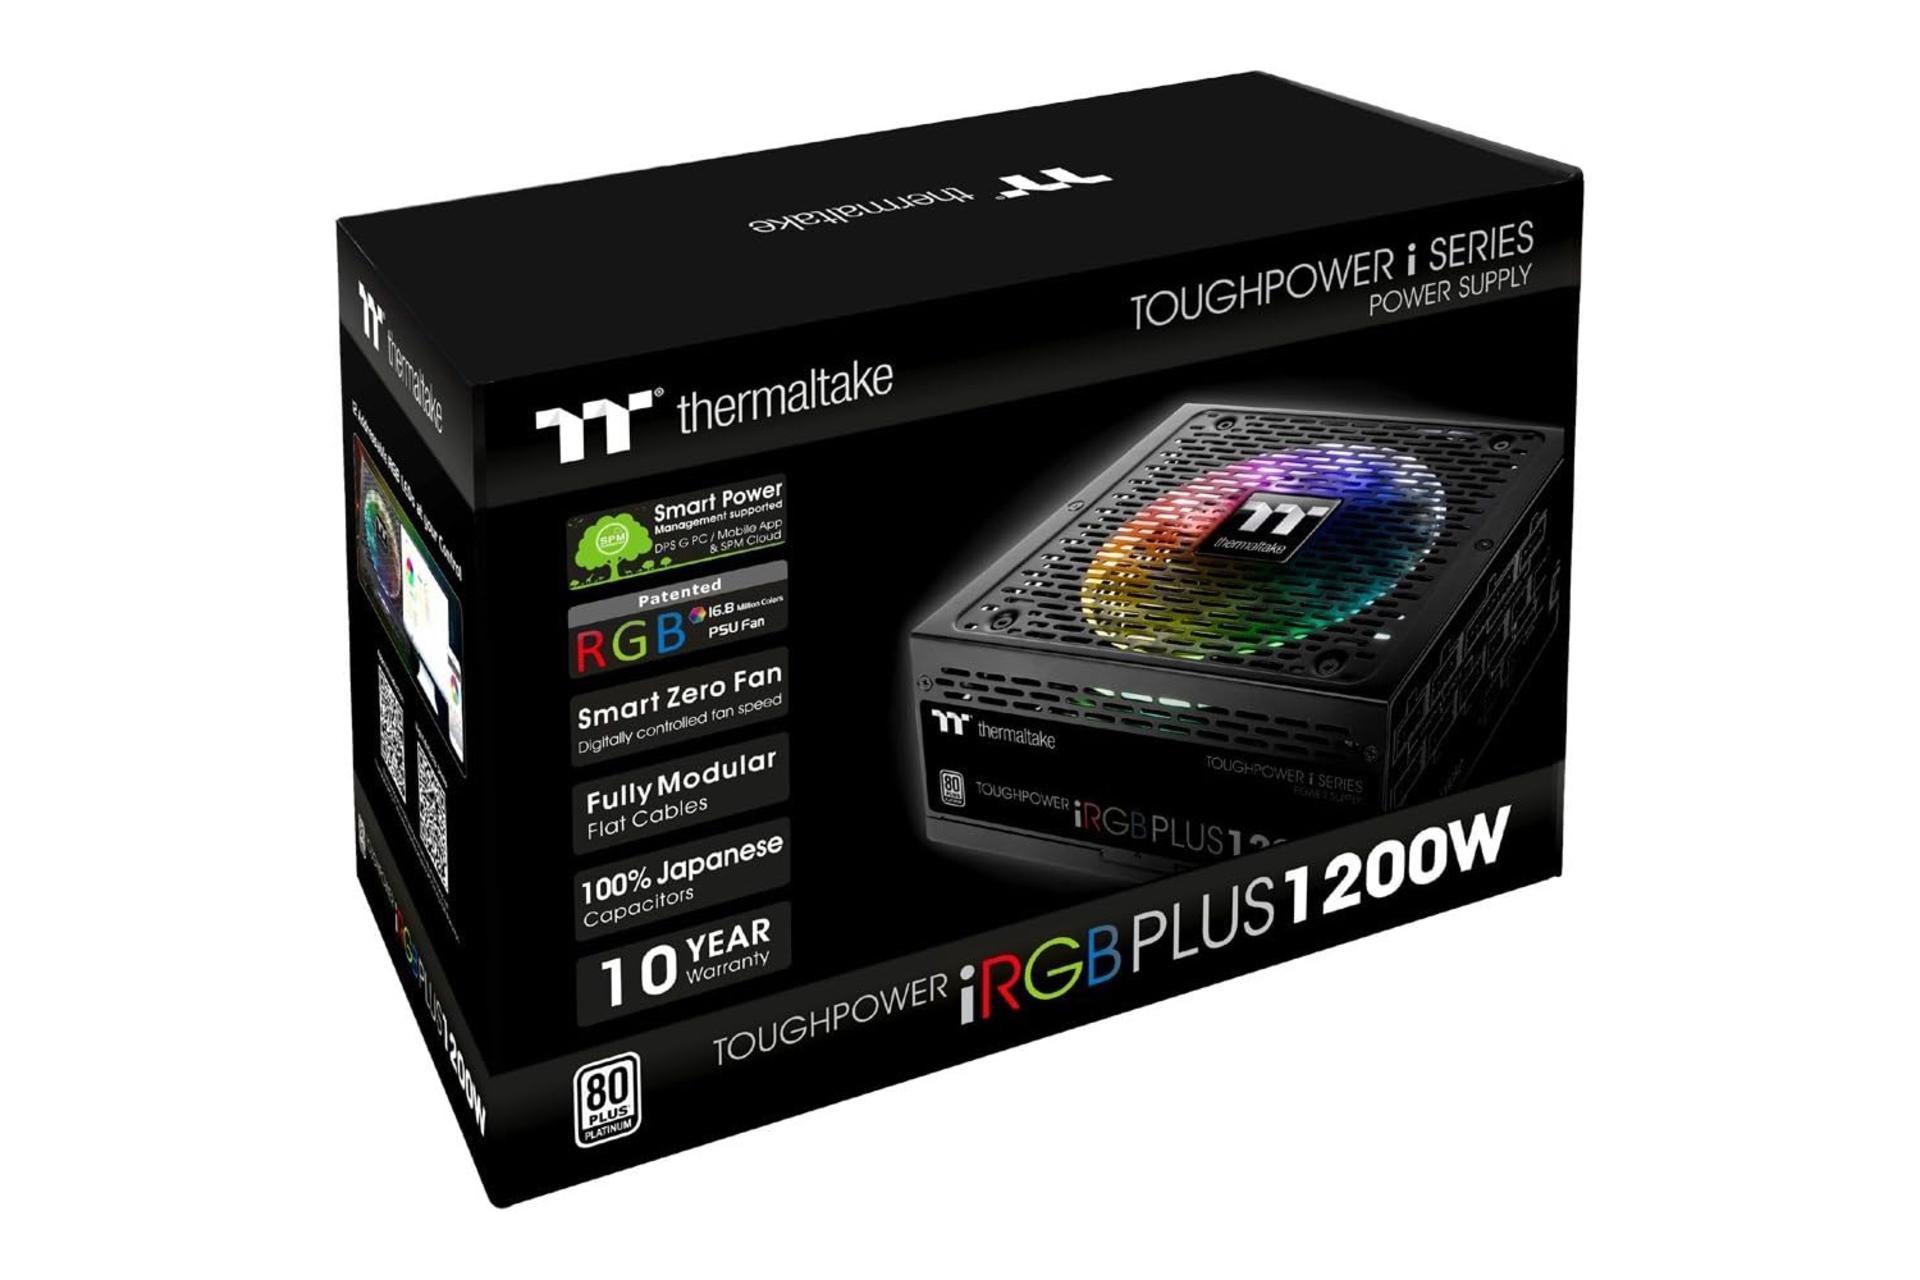 جعبه پاور کامپیوتر ترمالتیک Toughpower iRGB PLUS 1200W Platinum - TT Premium Edition با توان 1200 وات